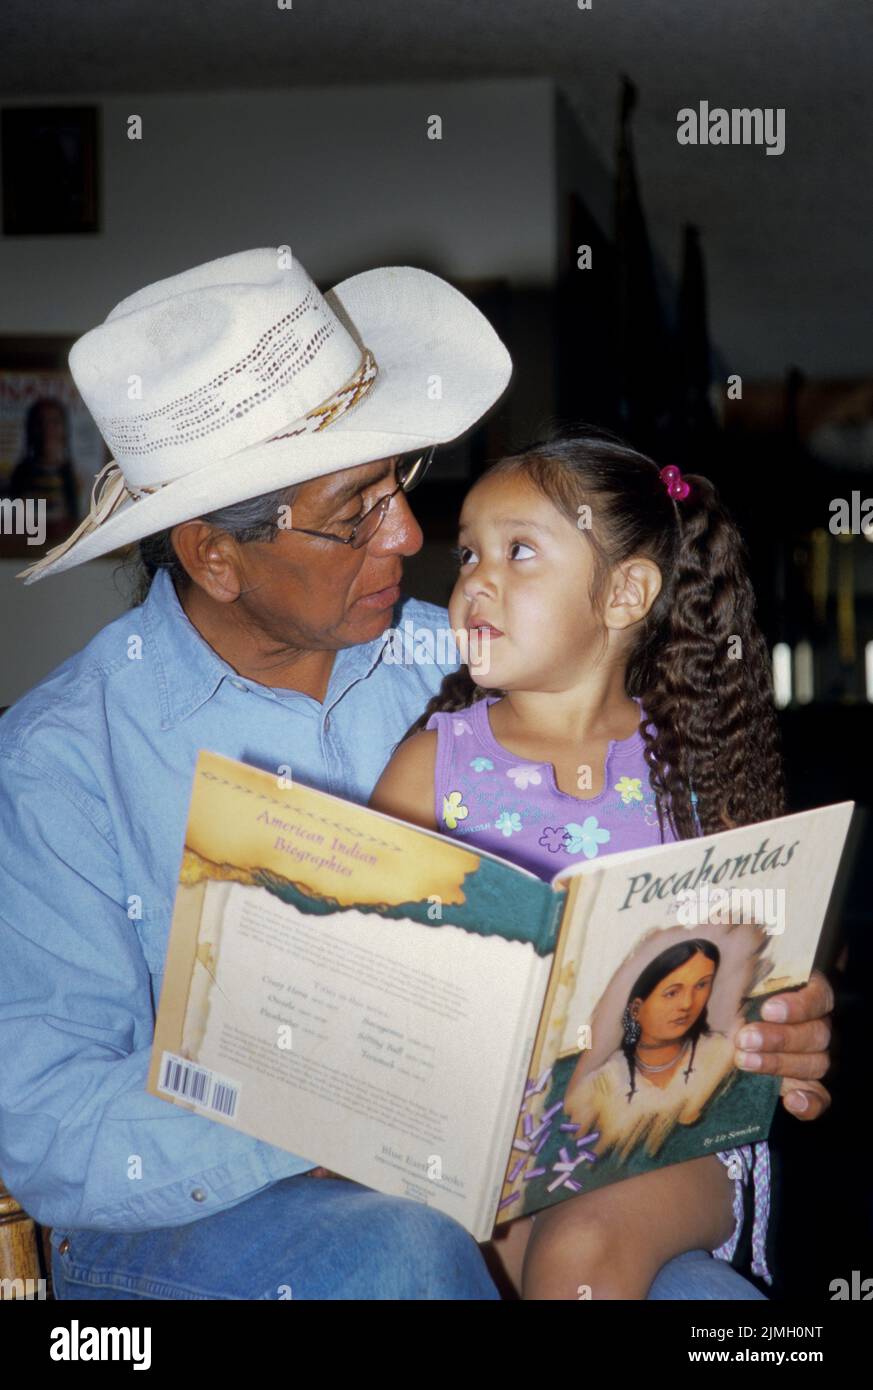 Famille amérindienne d'un grand-père lisant un livre d'histoire sur Pocahontas à sa petite-fille alors qu'elle le regarde. Banque D'Images